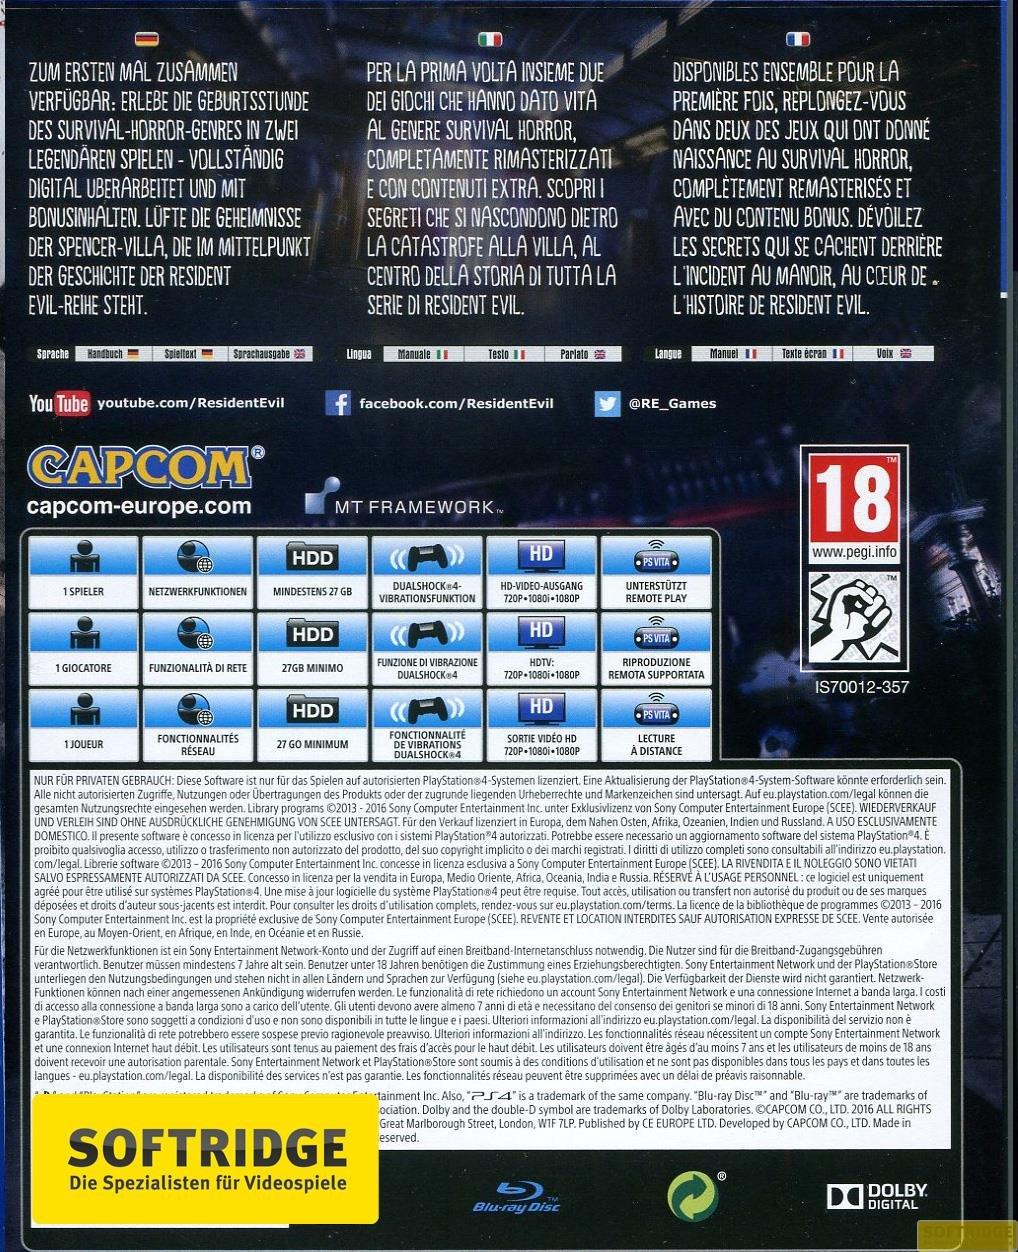 CAPCOM  Resident Evil Origins Collection 